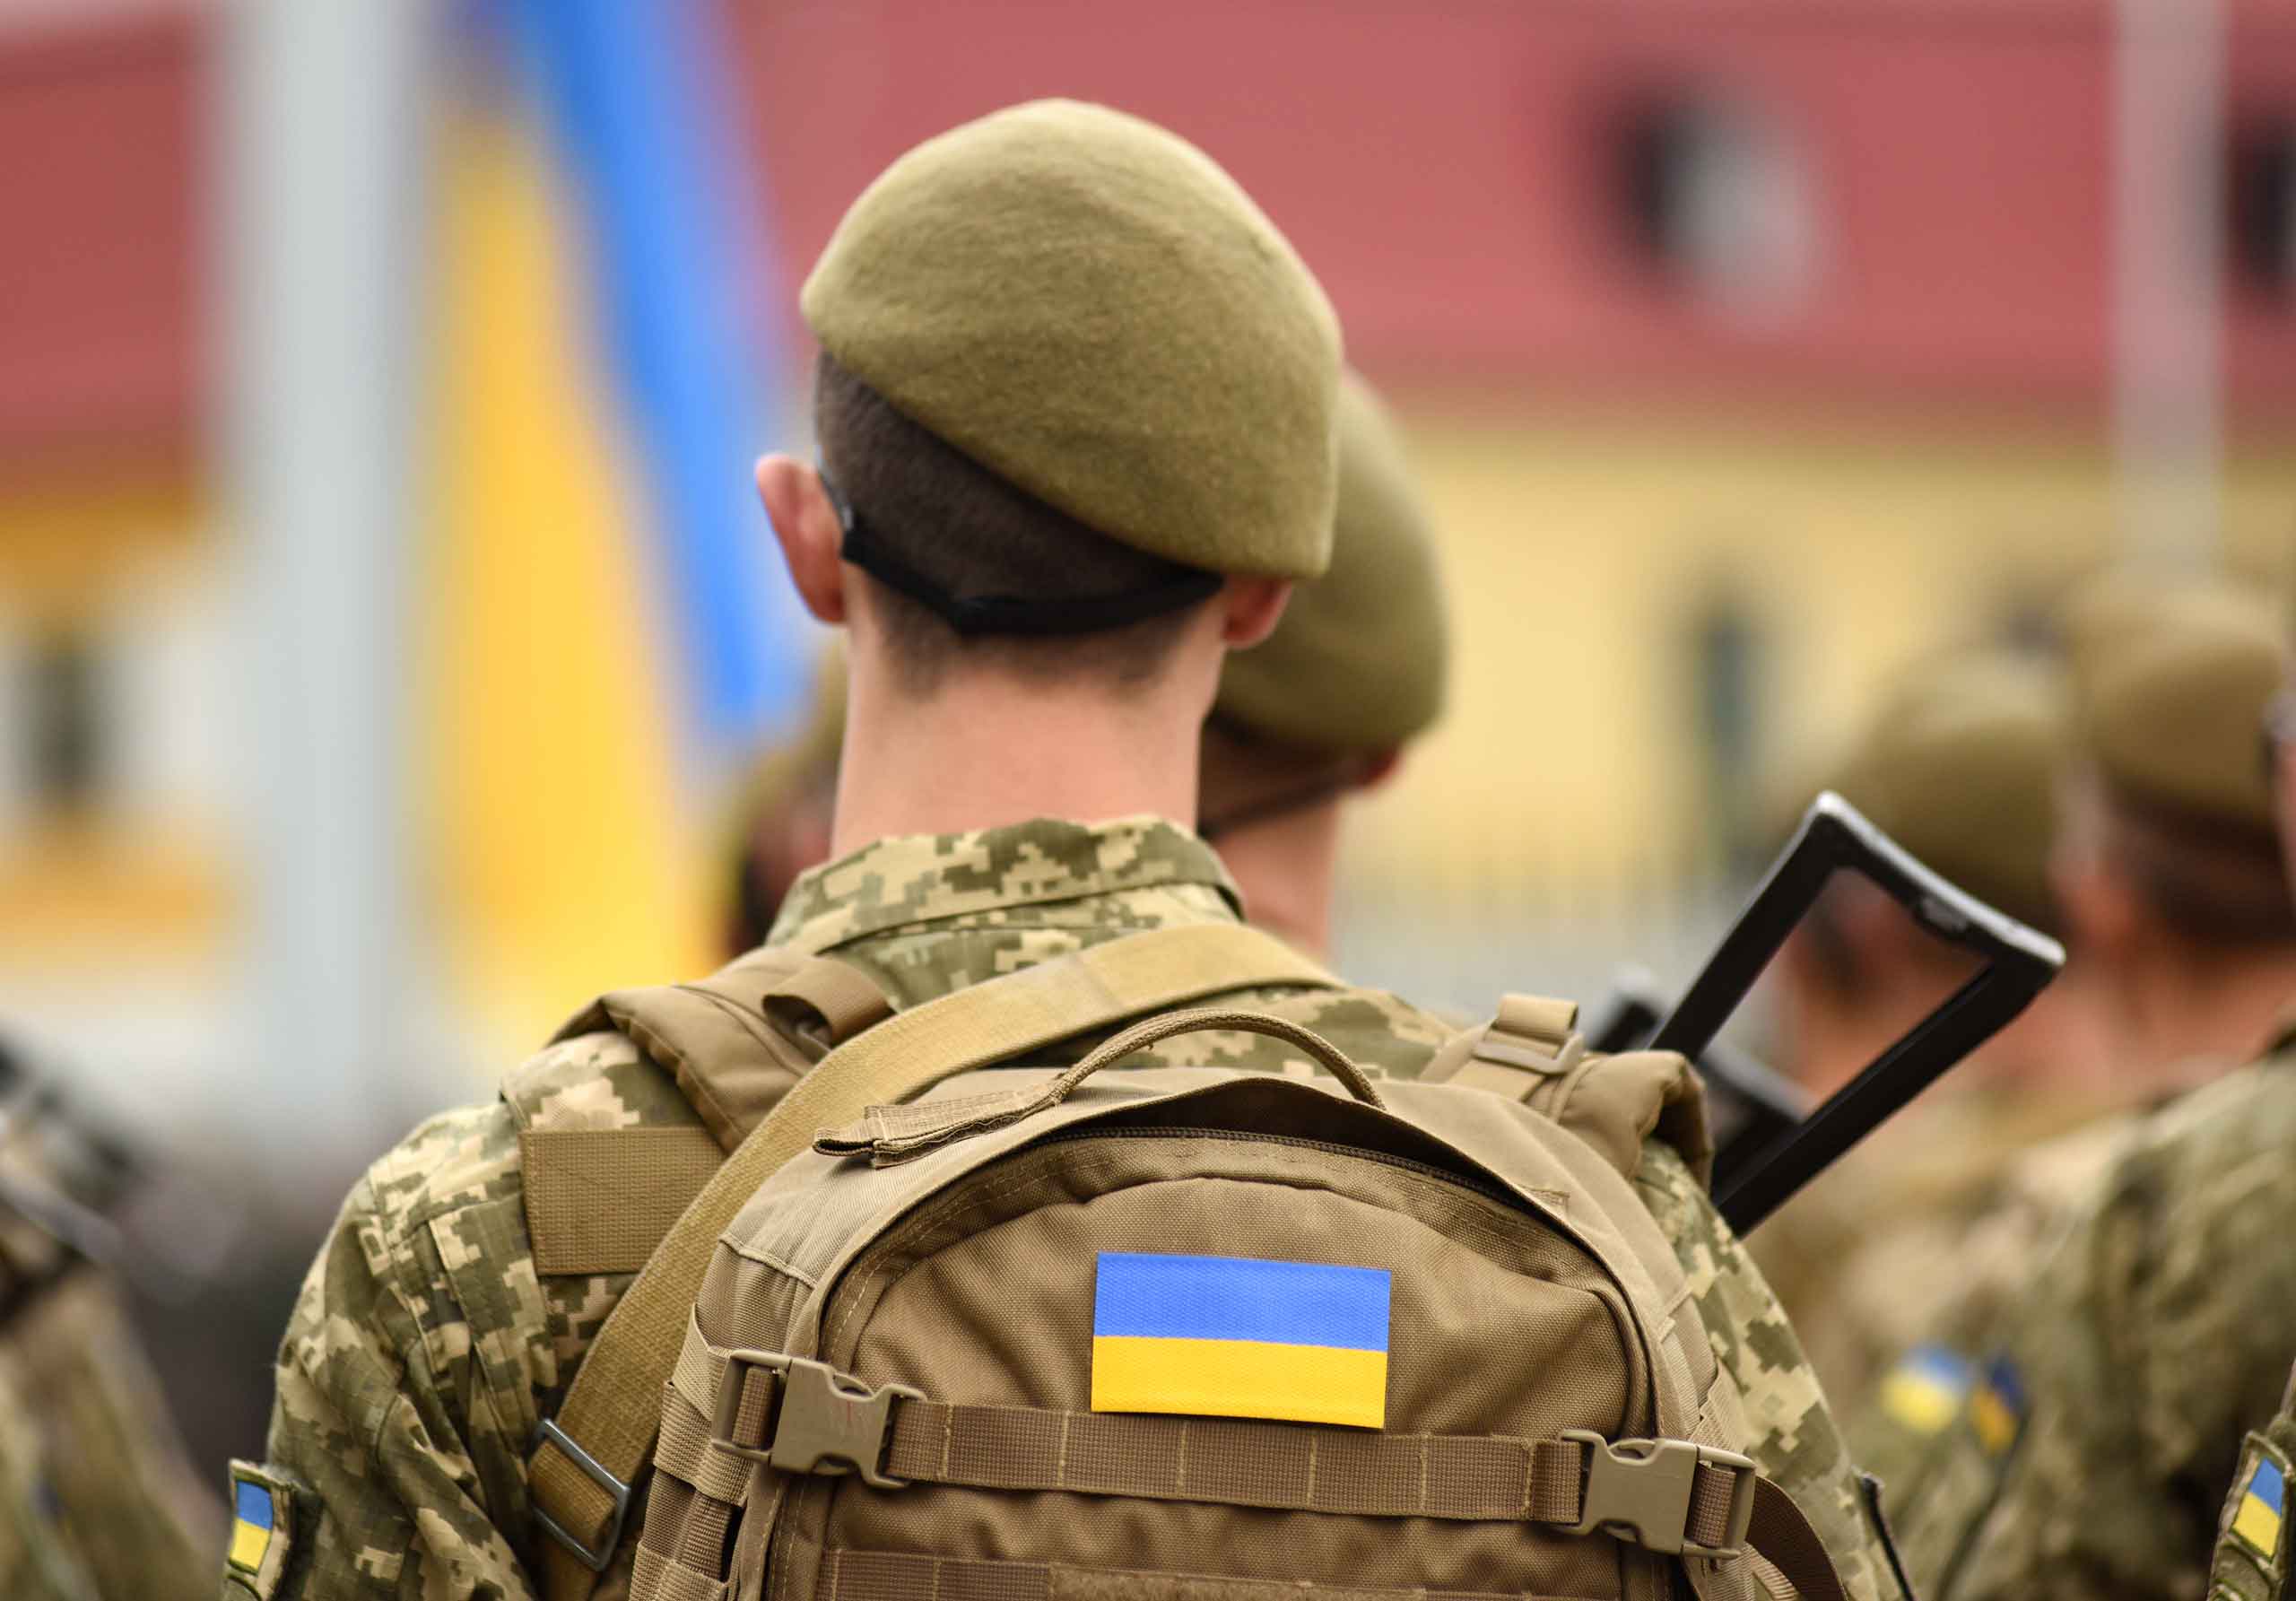 Help the Ukrainian soldier